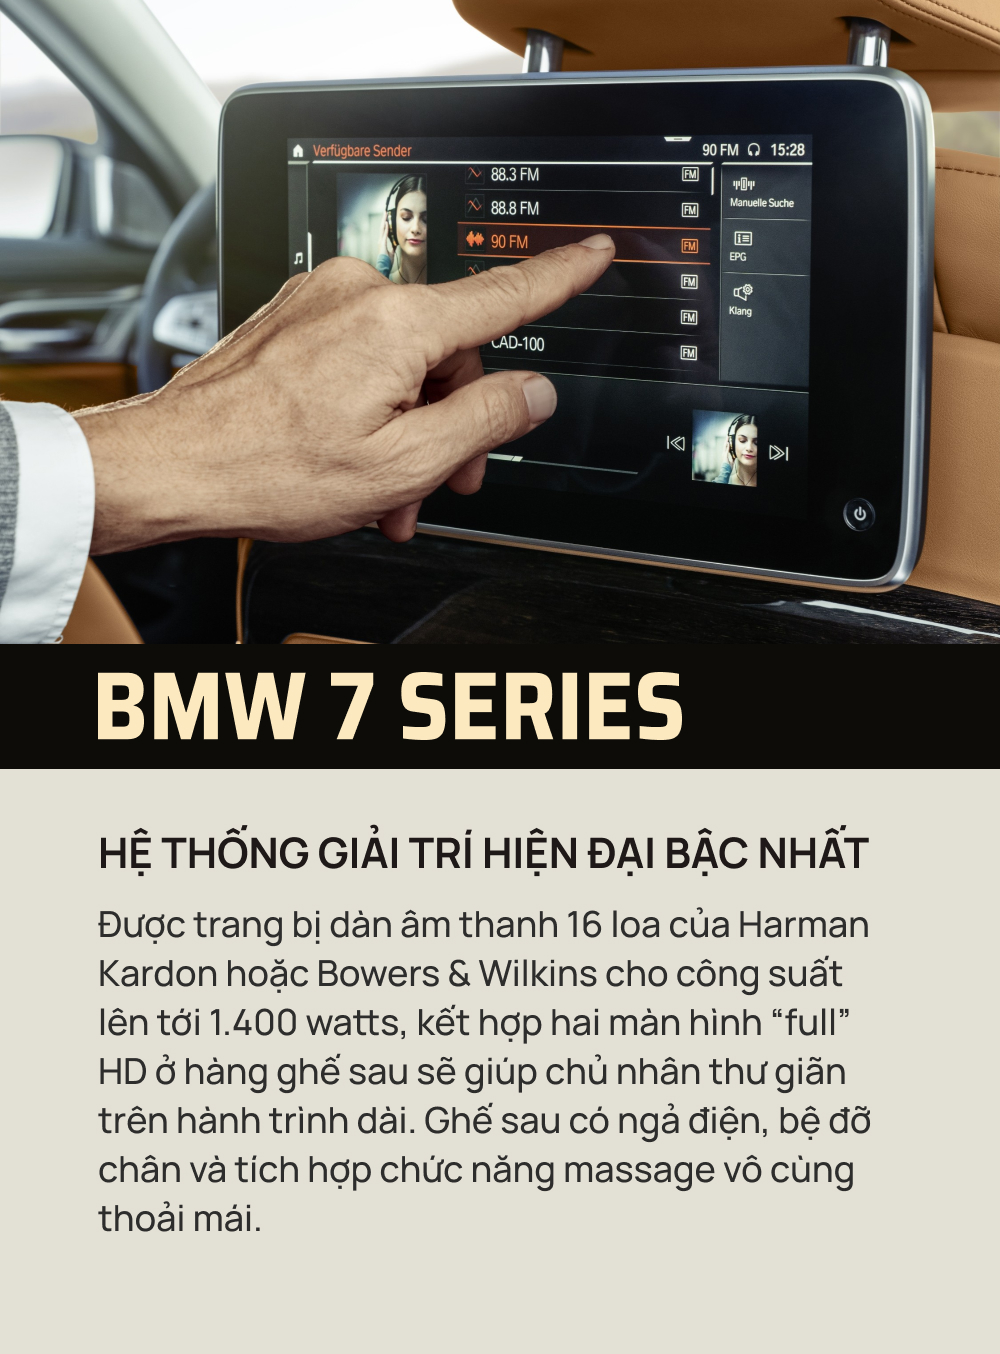 10 điểm nhấn tạo nên sức hút cho BMW 7 Series - Ảnh 5.